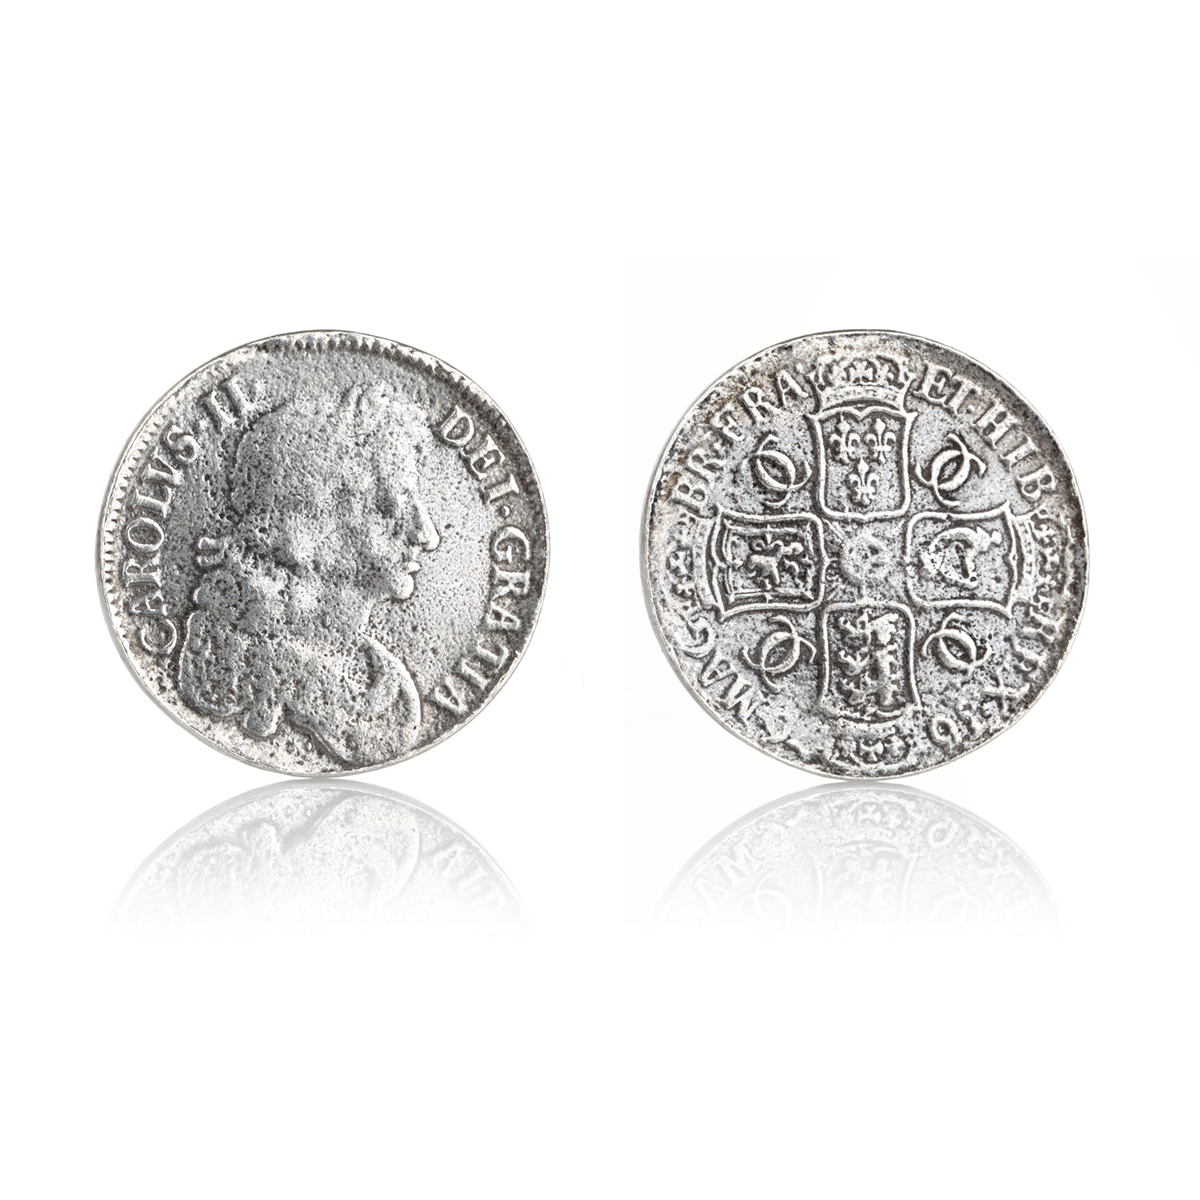 Piratenmünzen Repliken aus Metall (Zinn) - 5 Stück - Piratenschatz Made in England